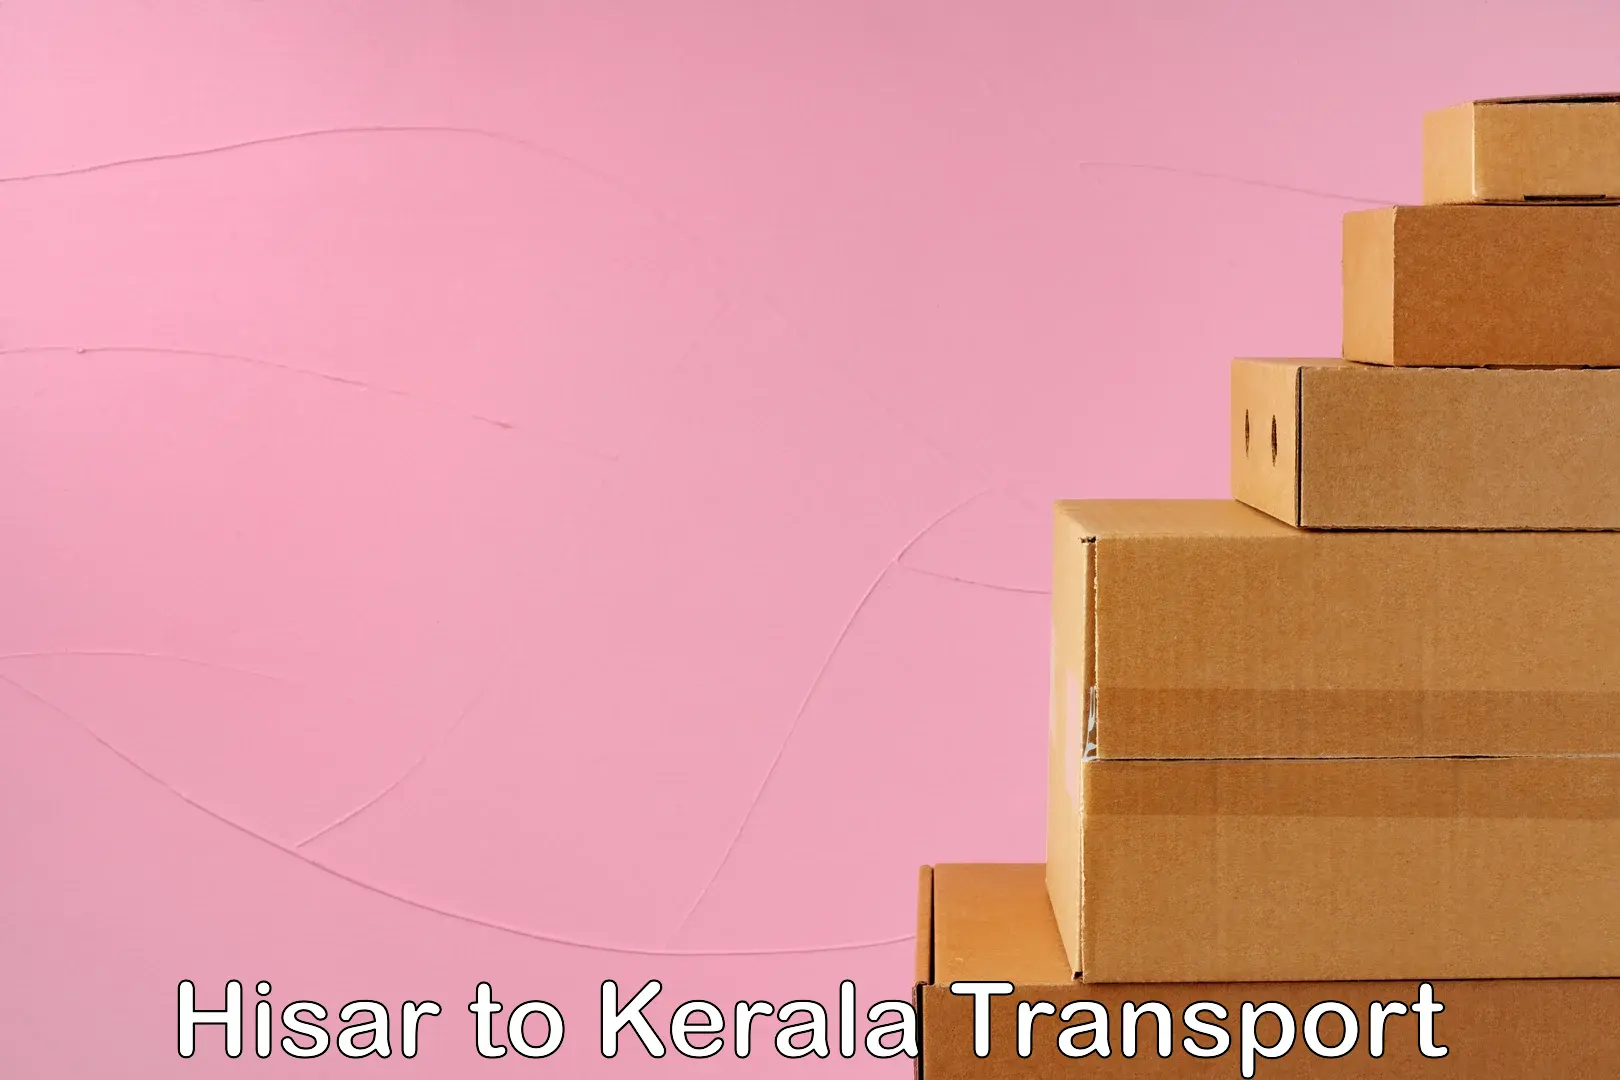 International cargo transportation services Hisar to Kollam